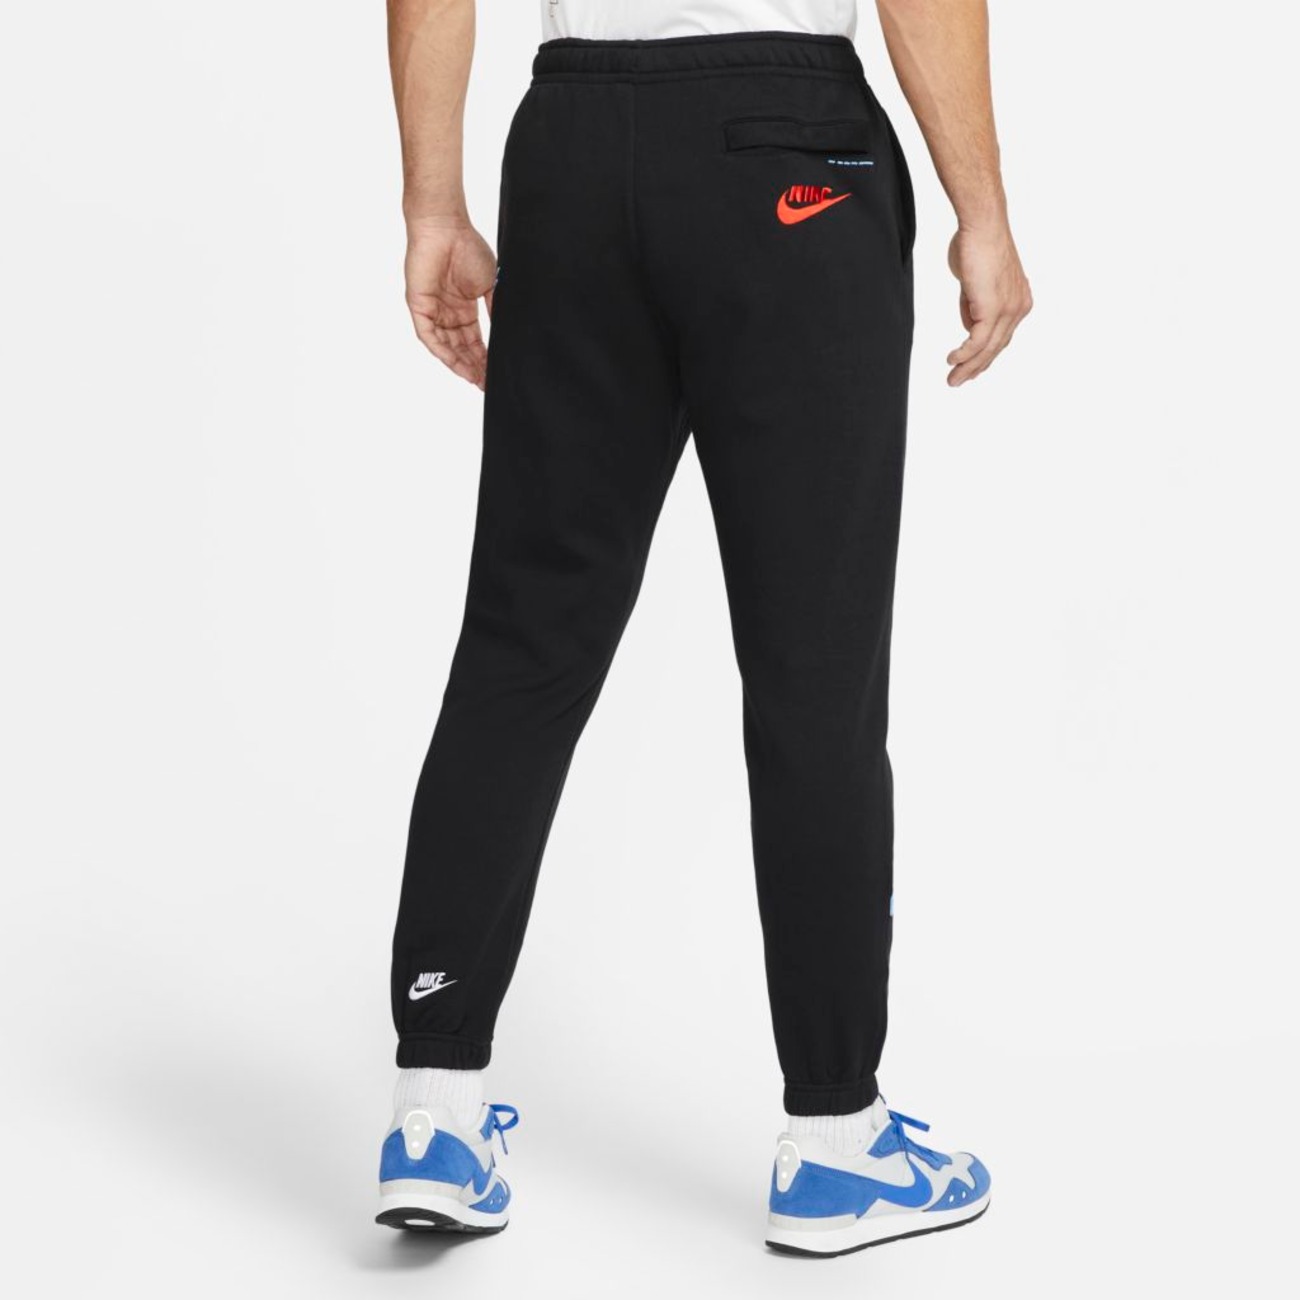 Calça Nike Sportswear Sport Essentials+ Masculina - Foto 2